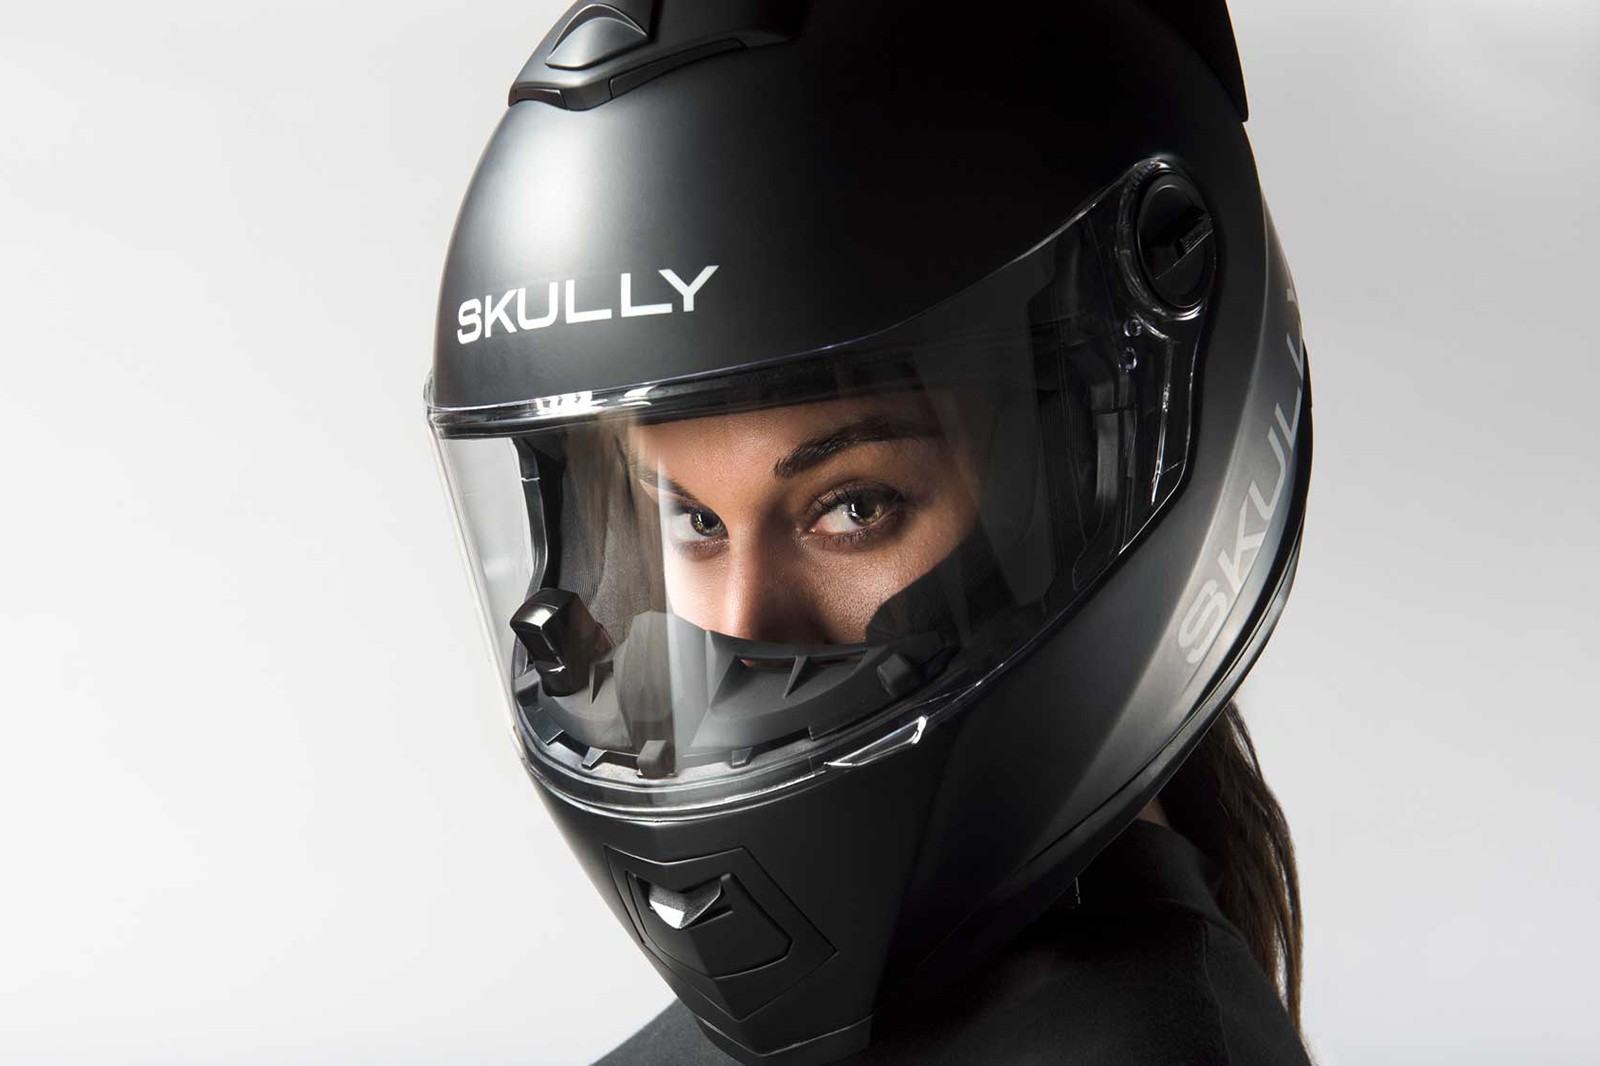 Производитель "умных" шлемов Skully объявил о банкротстве. 